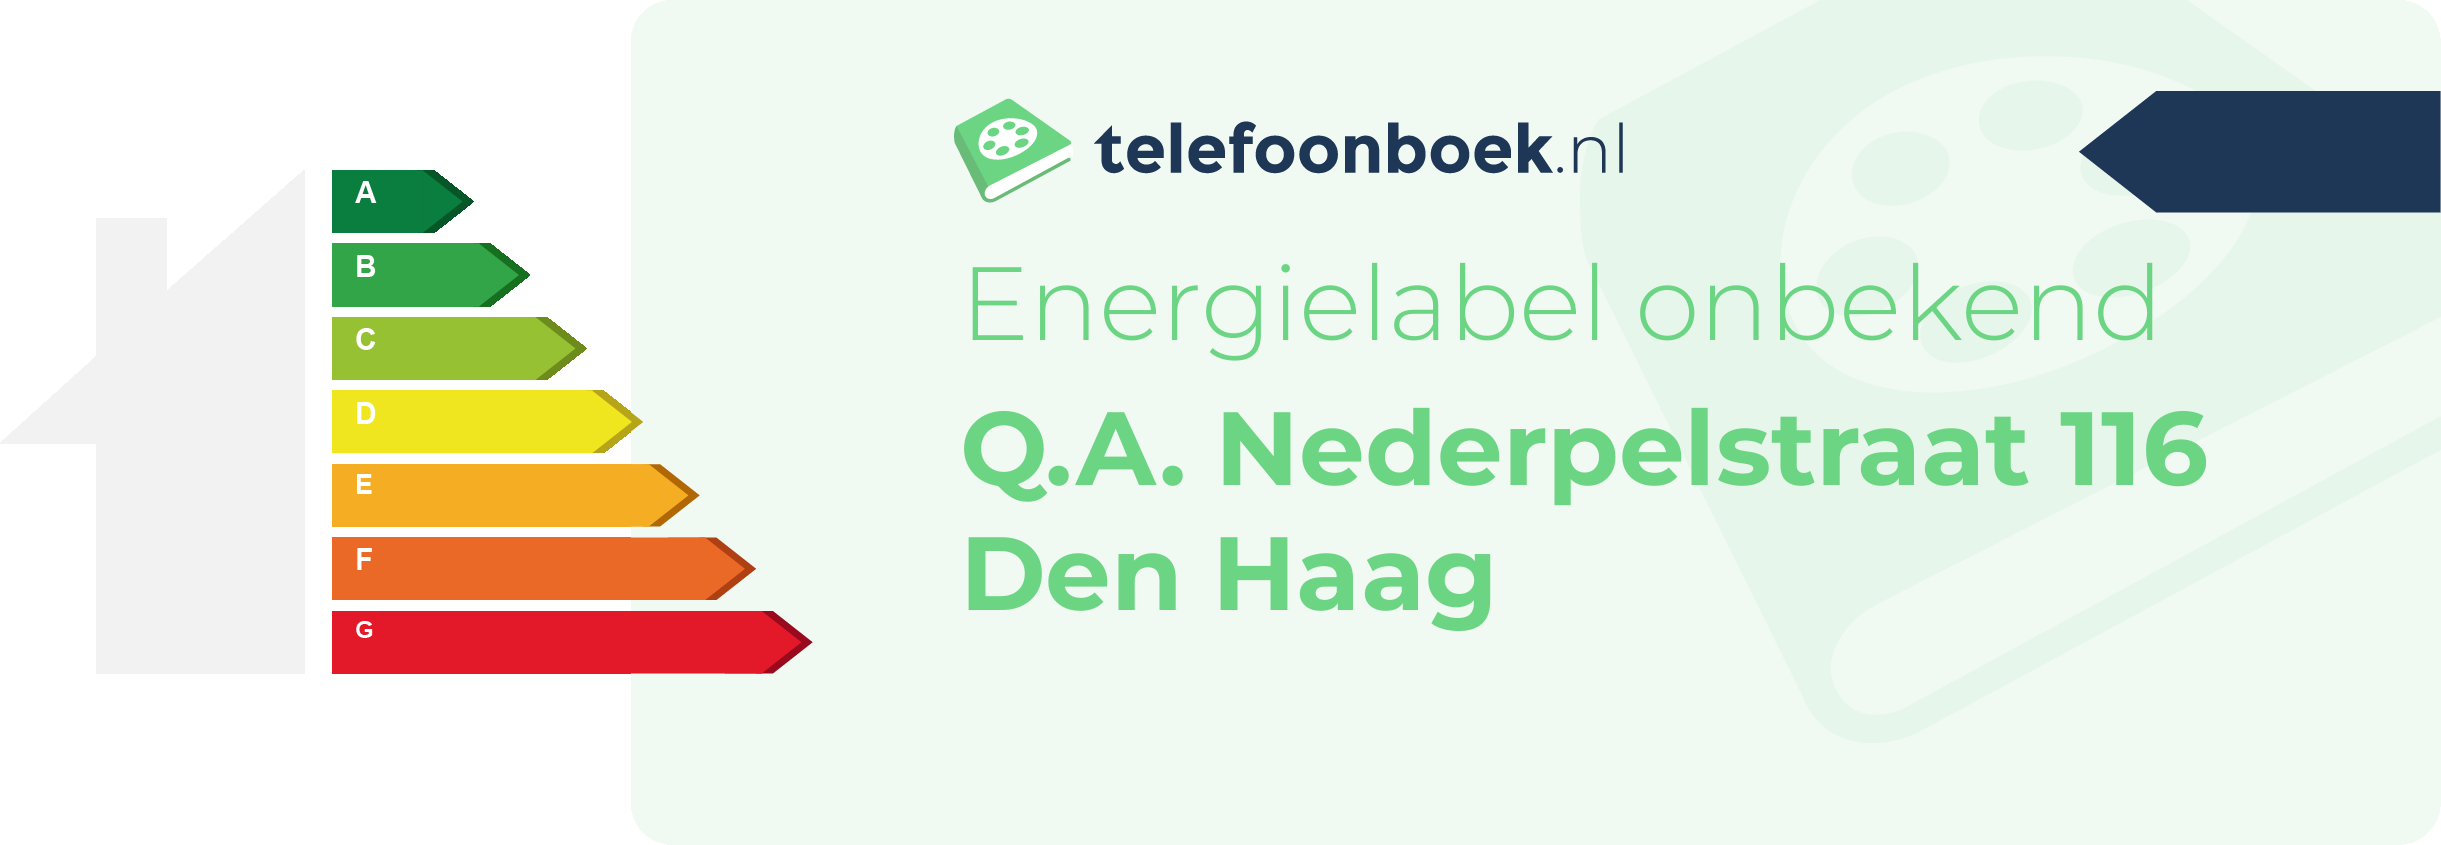 Energielabel Q.A. Nederpelstraat 116 Den Haag